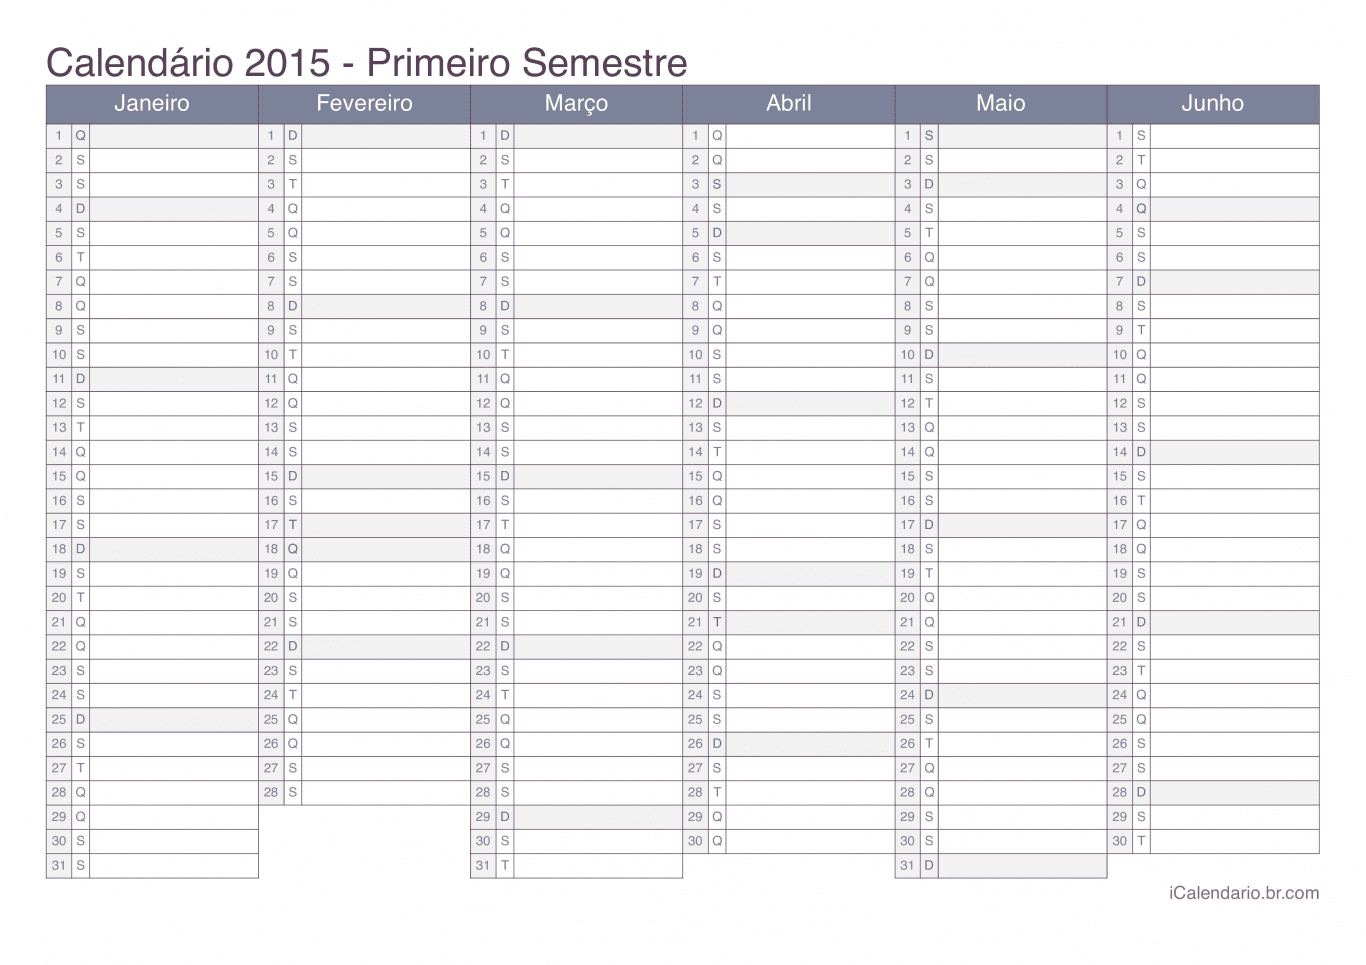 Calendário por semestre 2015 - Office